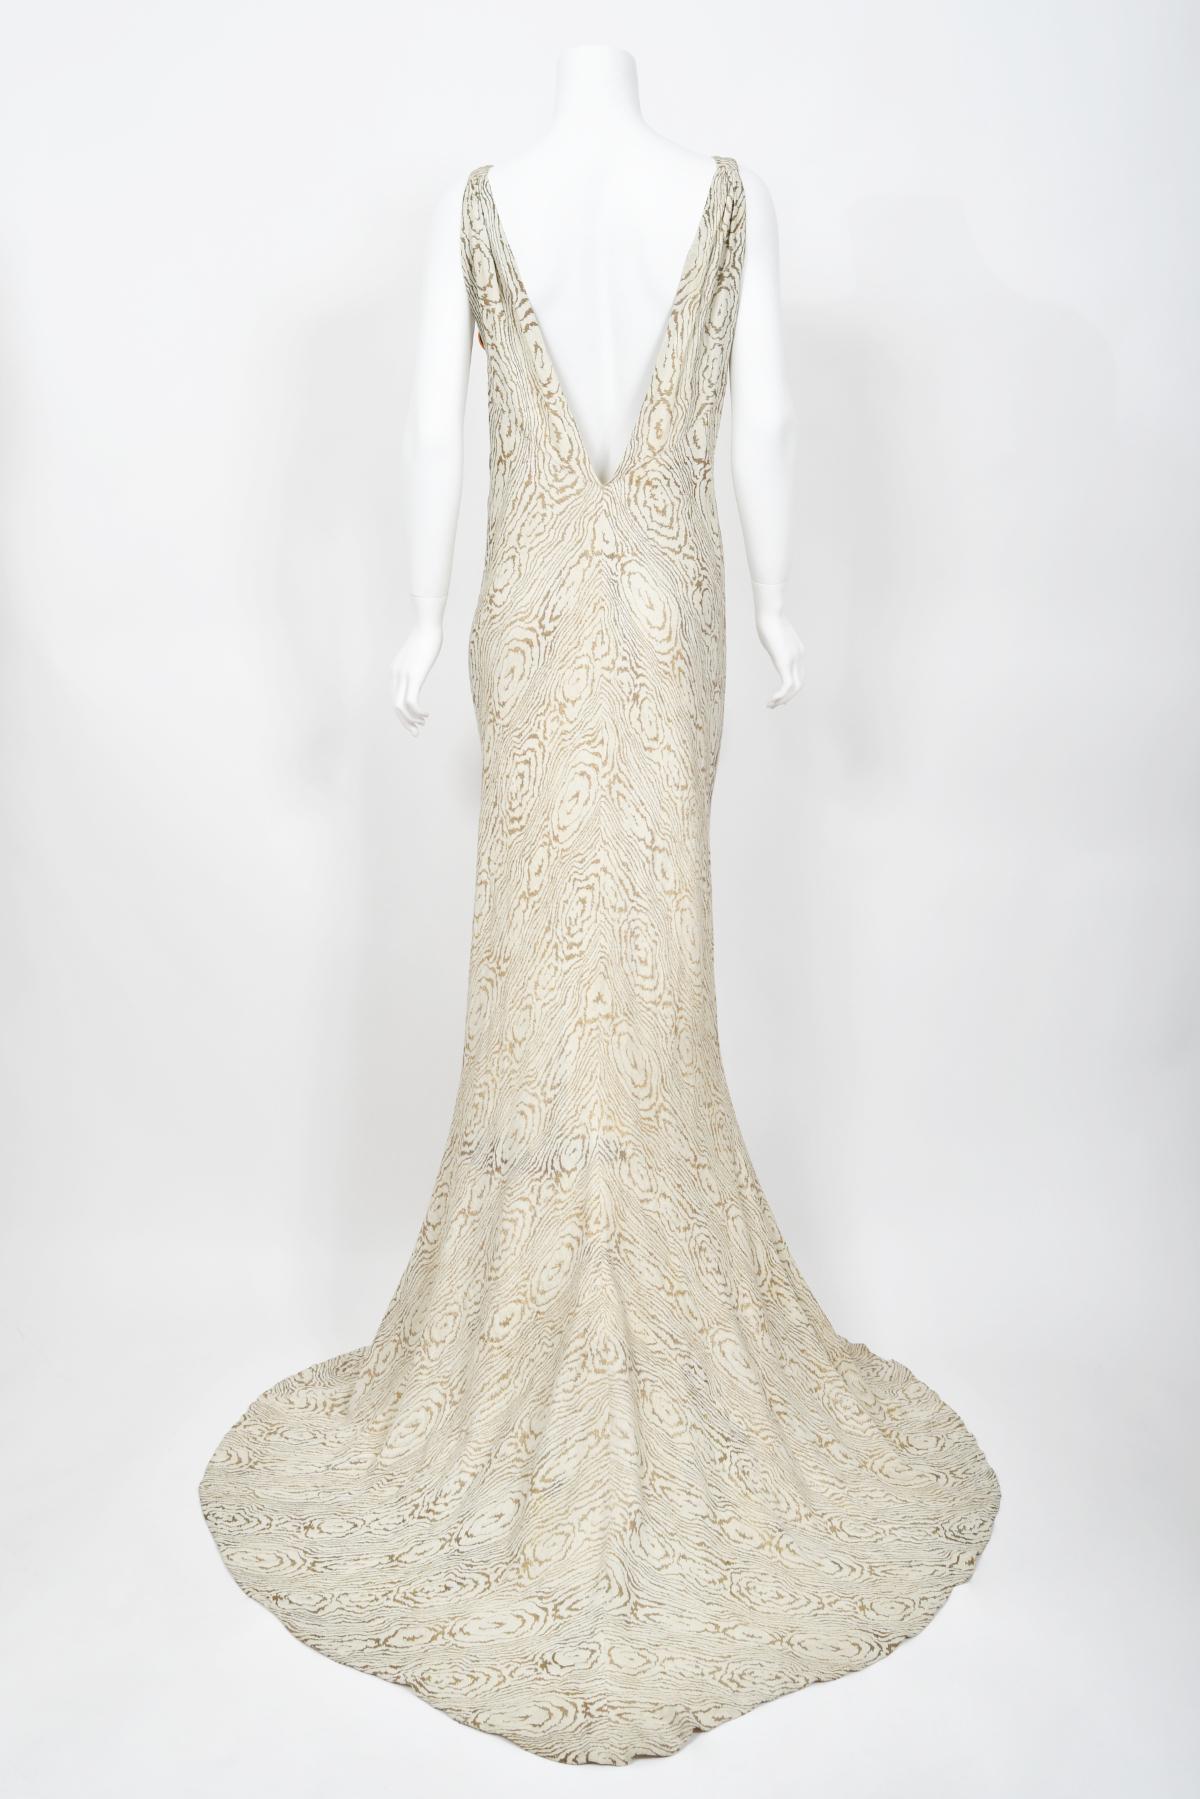 1930's Metallic Wood-Patterned Lamé Deco Appliqué Bias-Cut Trained Bridal Gown  14